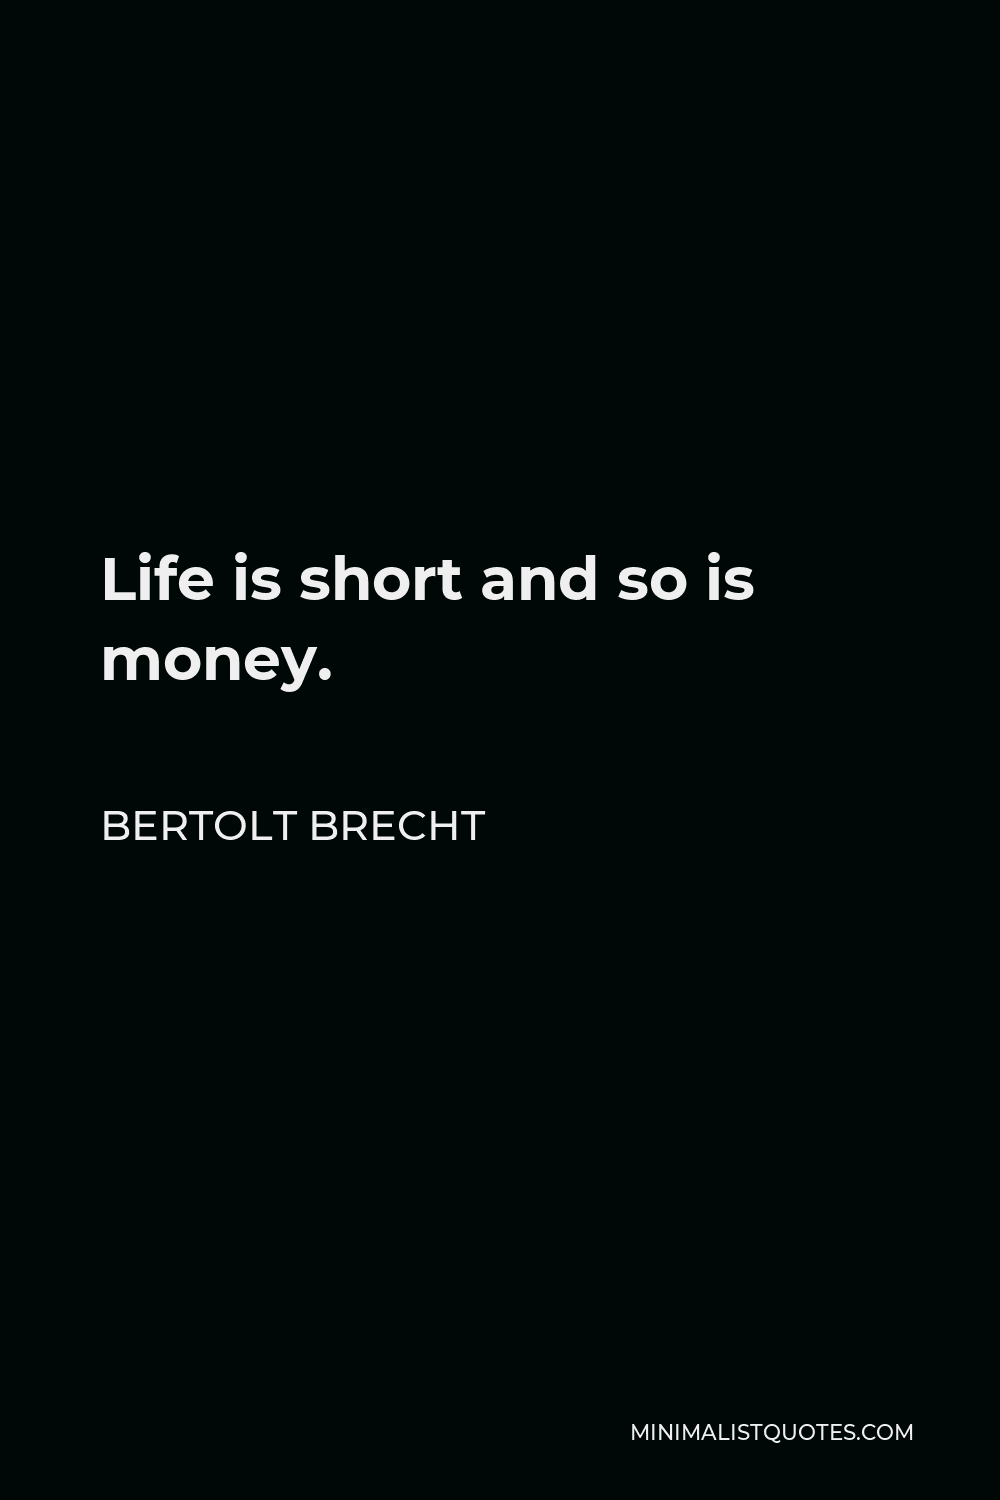 Bertolt Brecht Quote - Life is short and so is money.